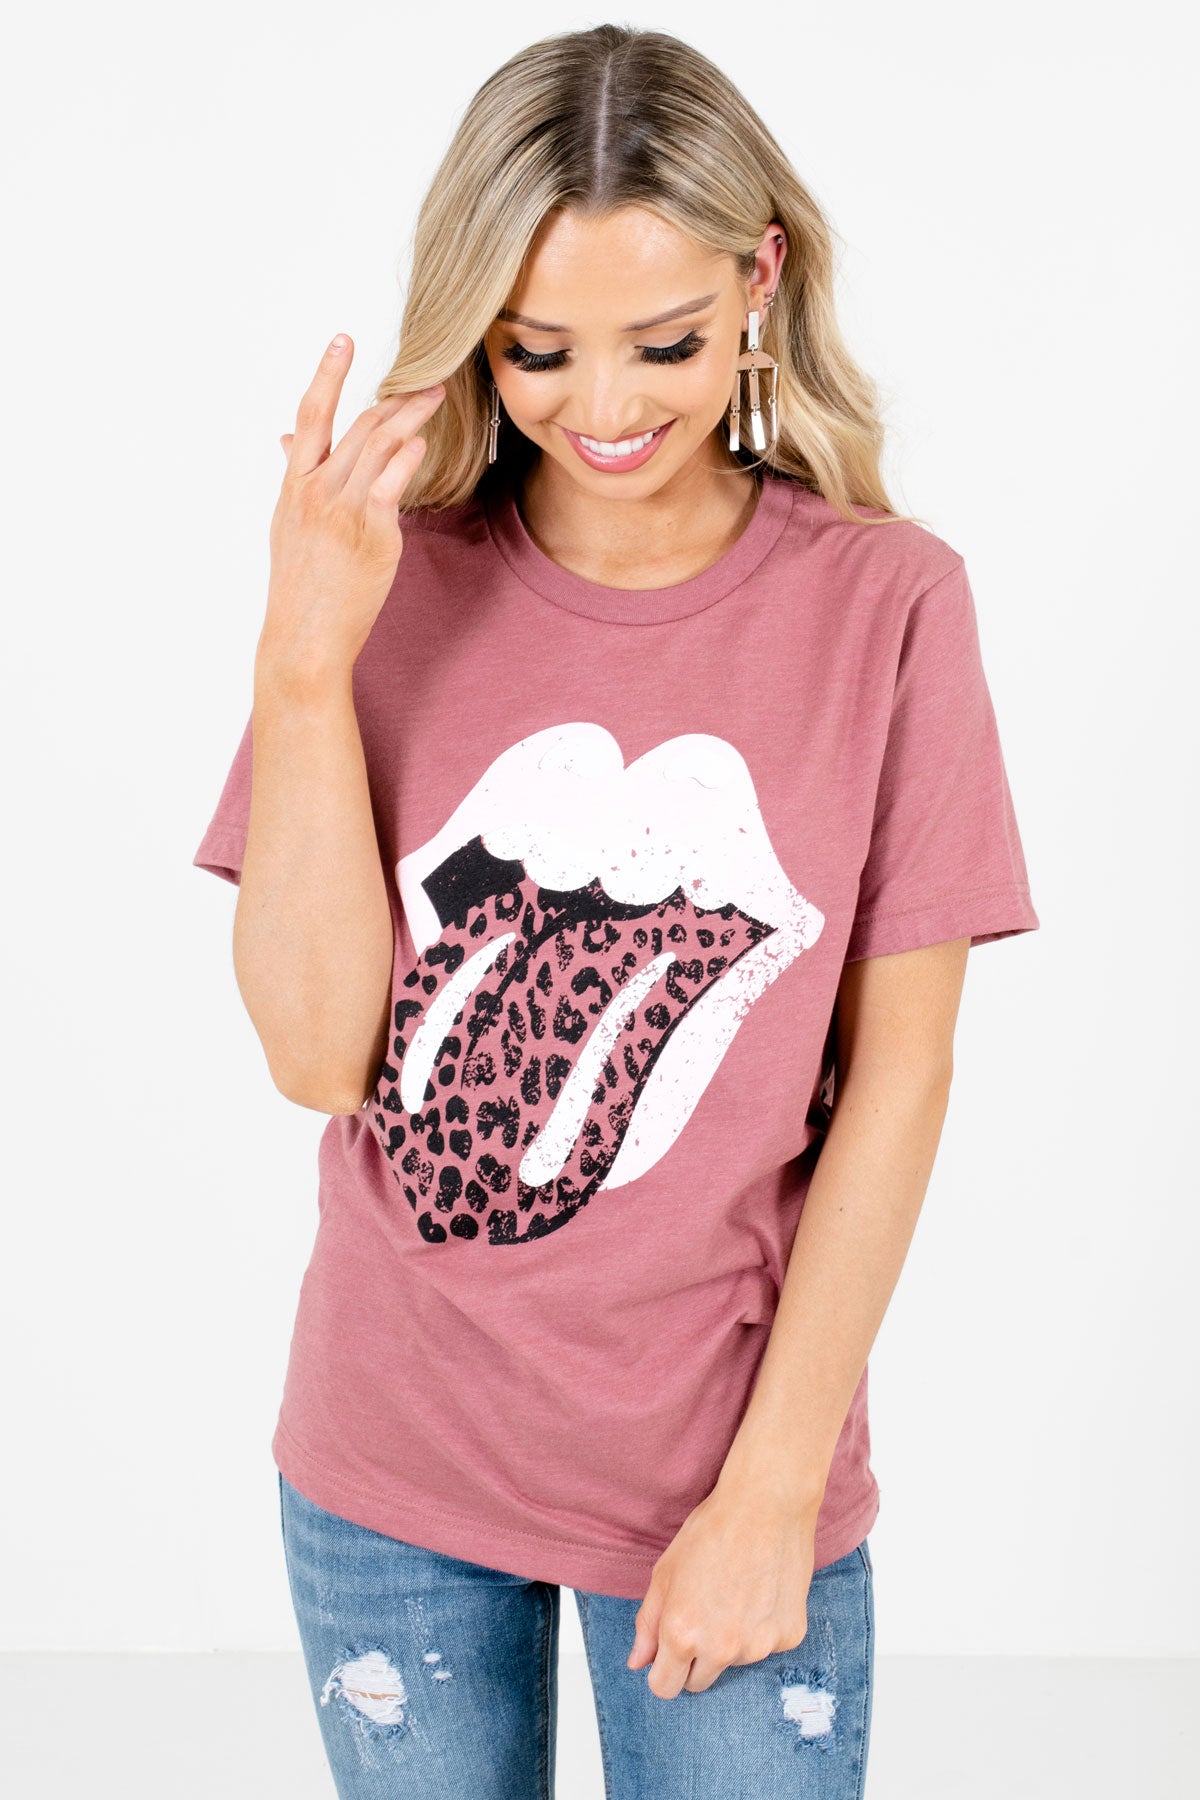 Mauve Leopard Print Graphic Boutique T-Shirts for Women